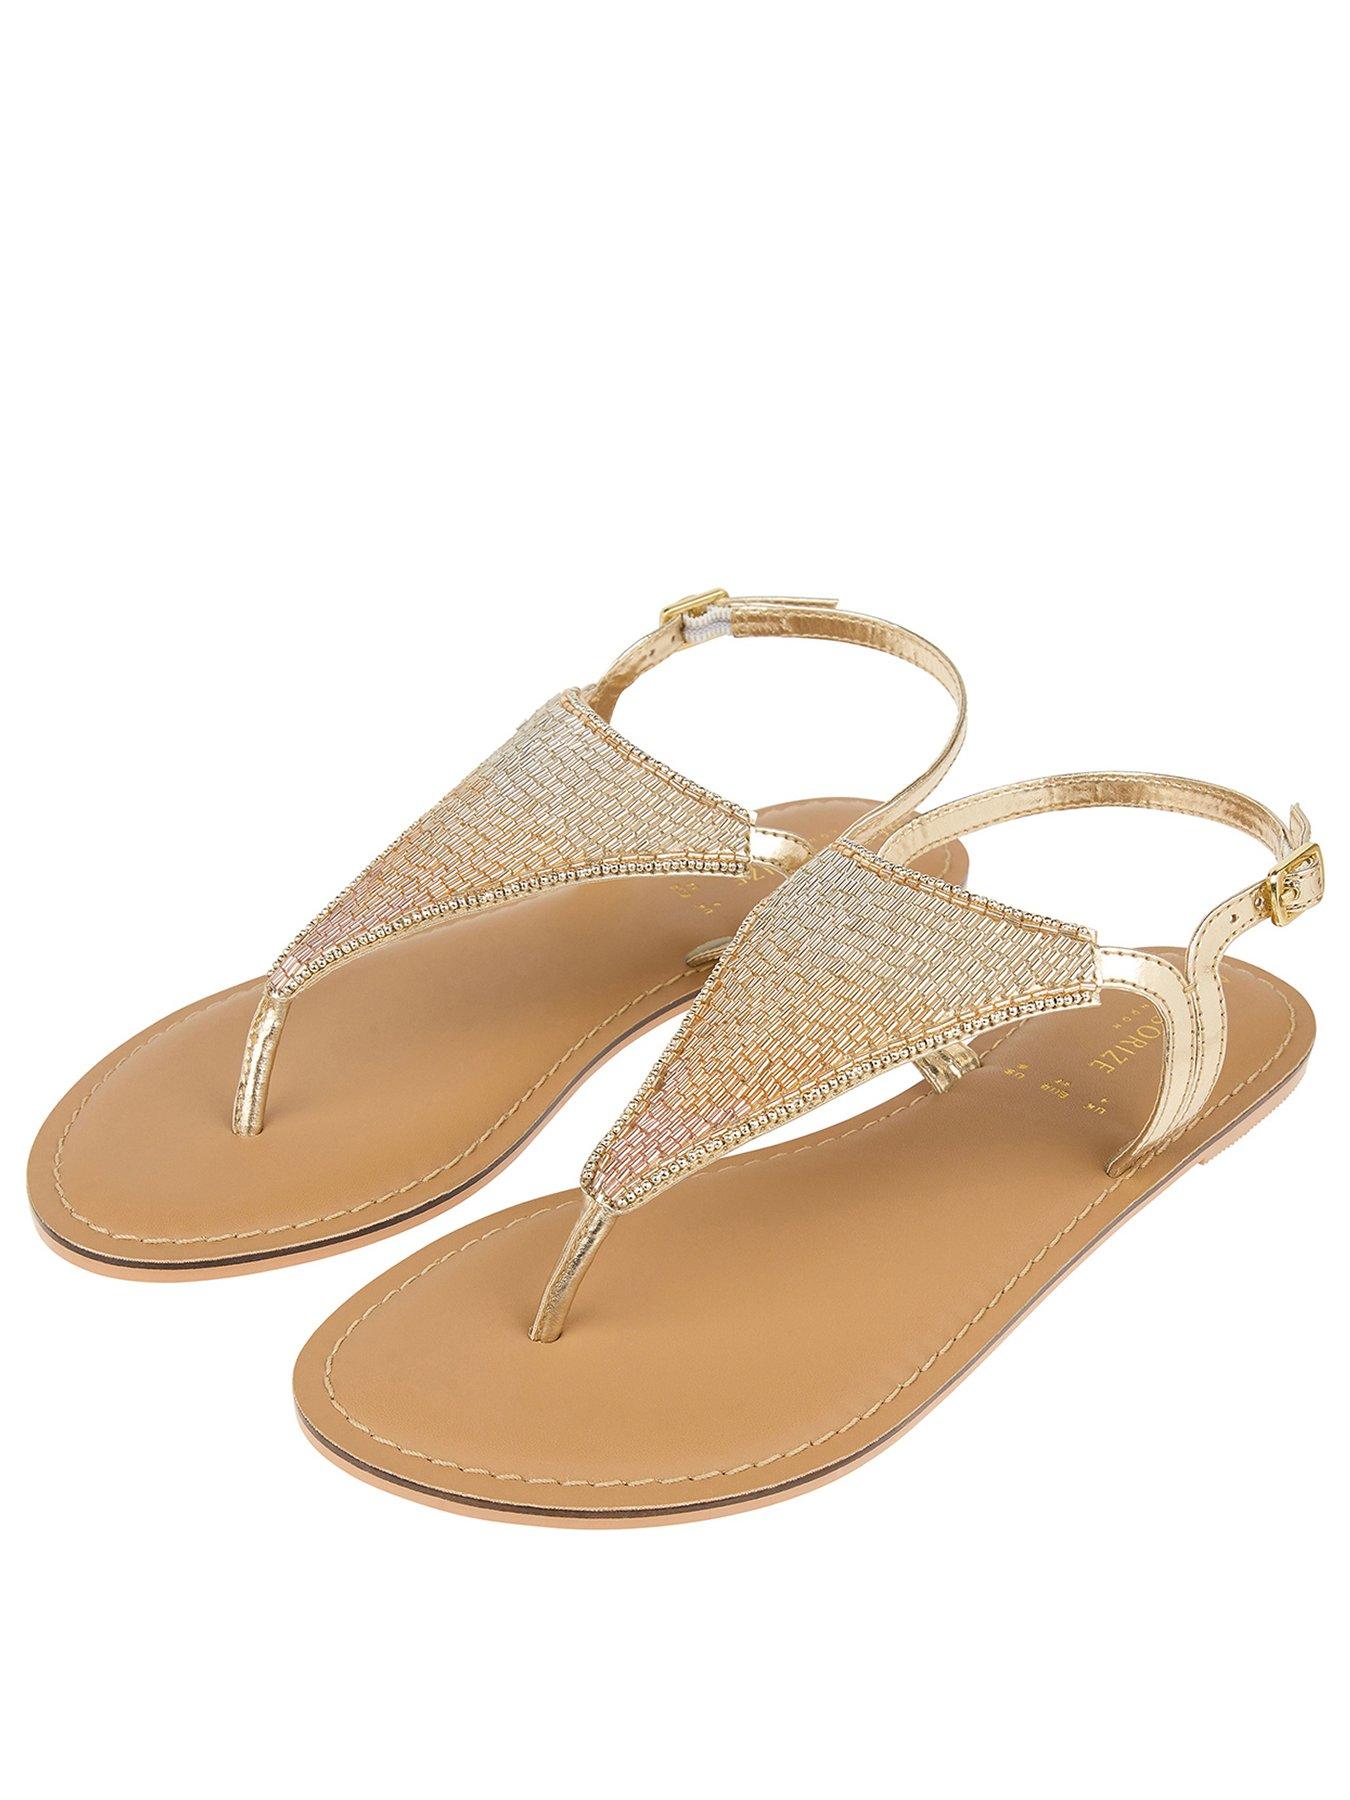 gold sandals ireland